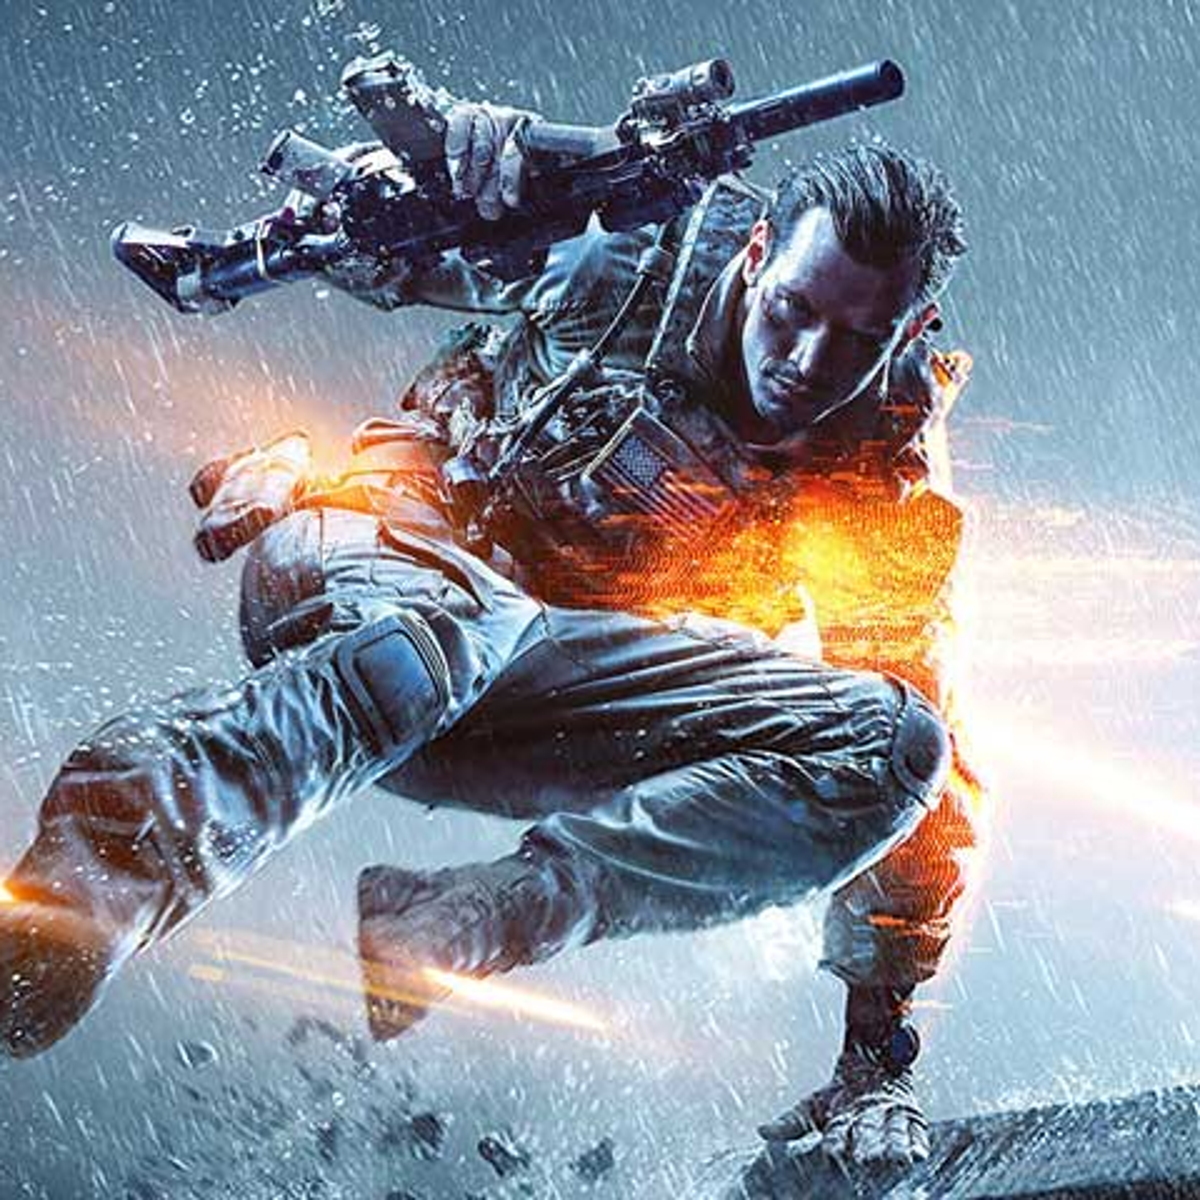 Graf natuurlijk In zoomen Battlefield 4 Squad Join now in beta on consoles | VG247